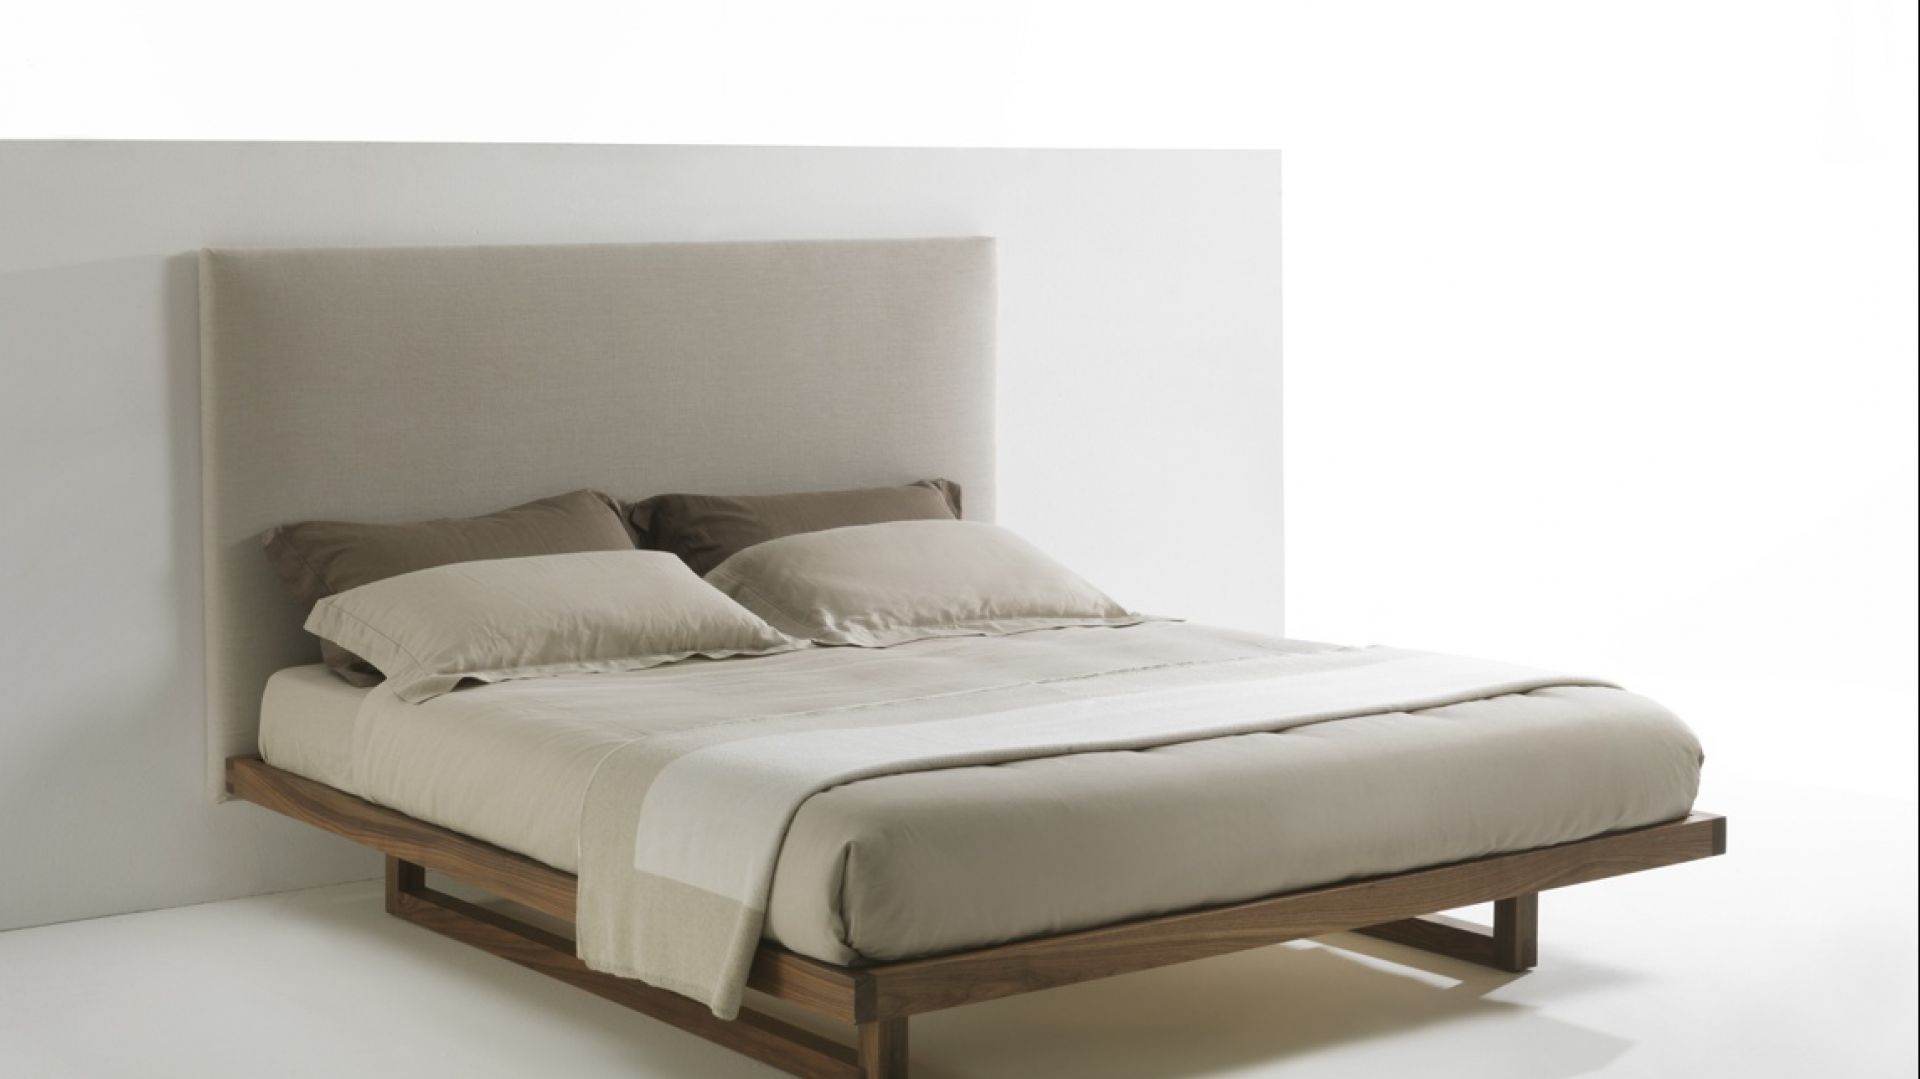 Łóżko "Bam Bam Soft" - dla miłośników minimalizmu